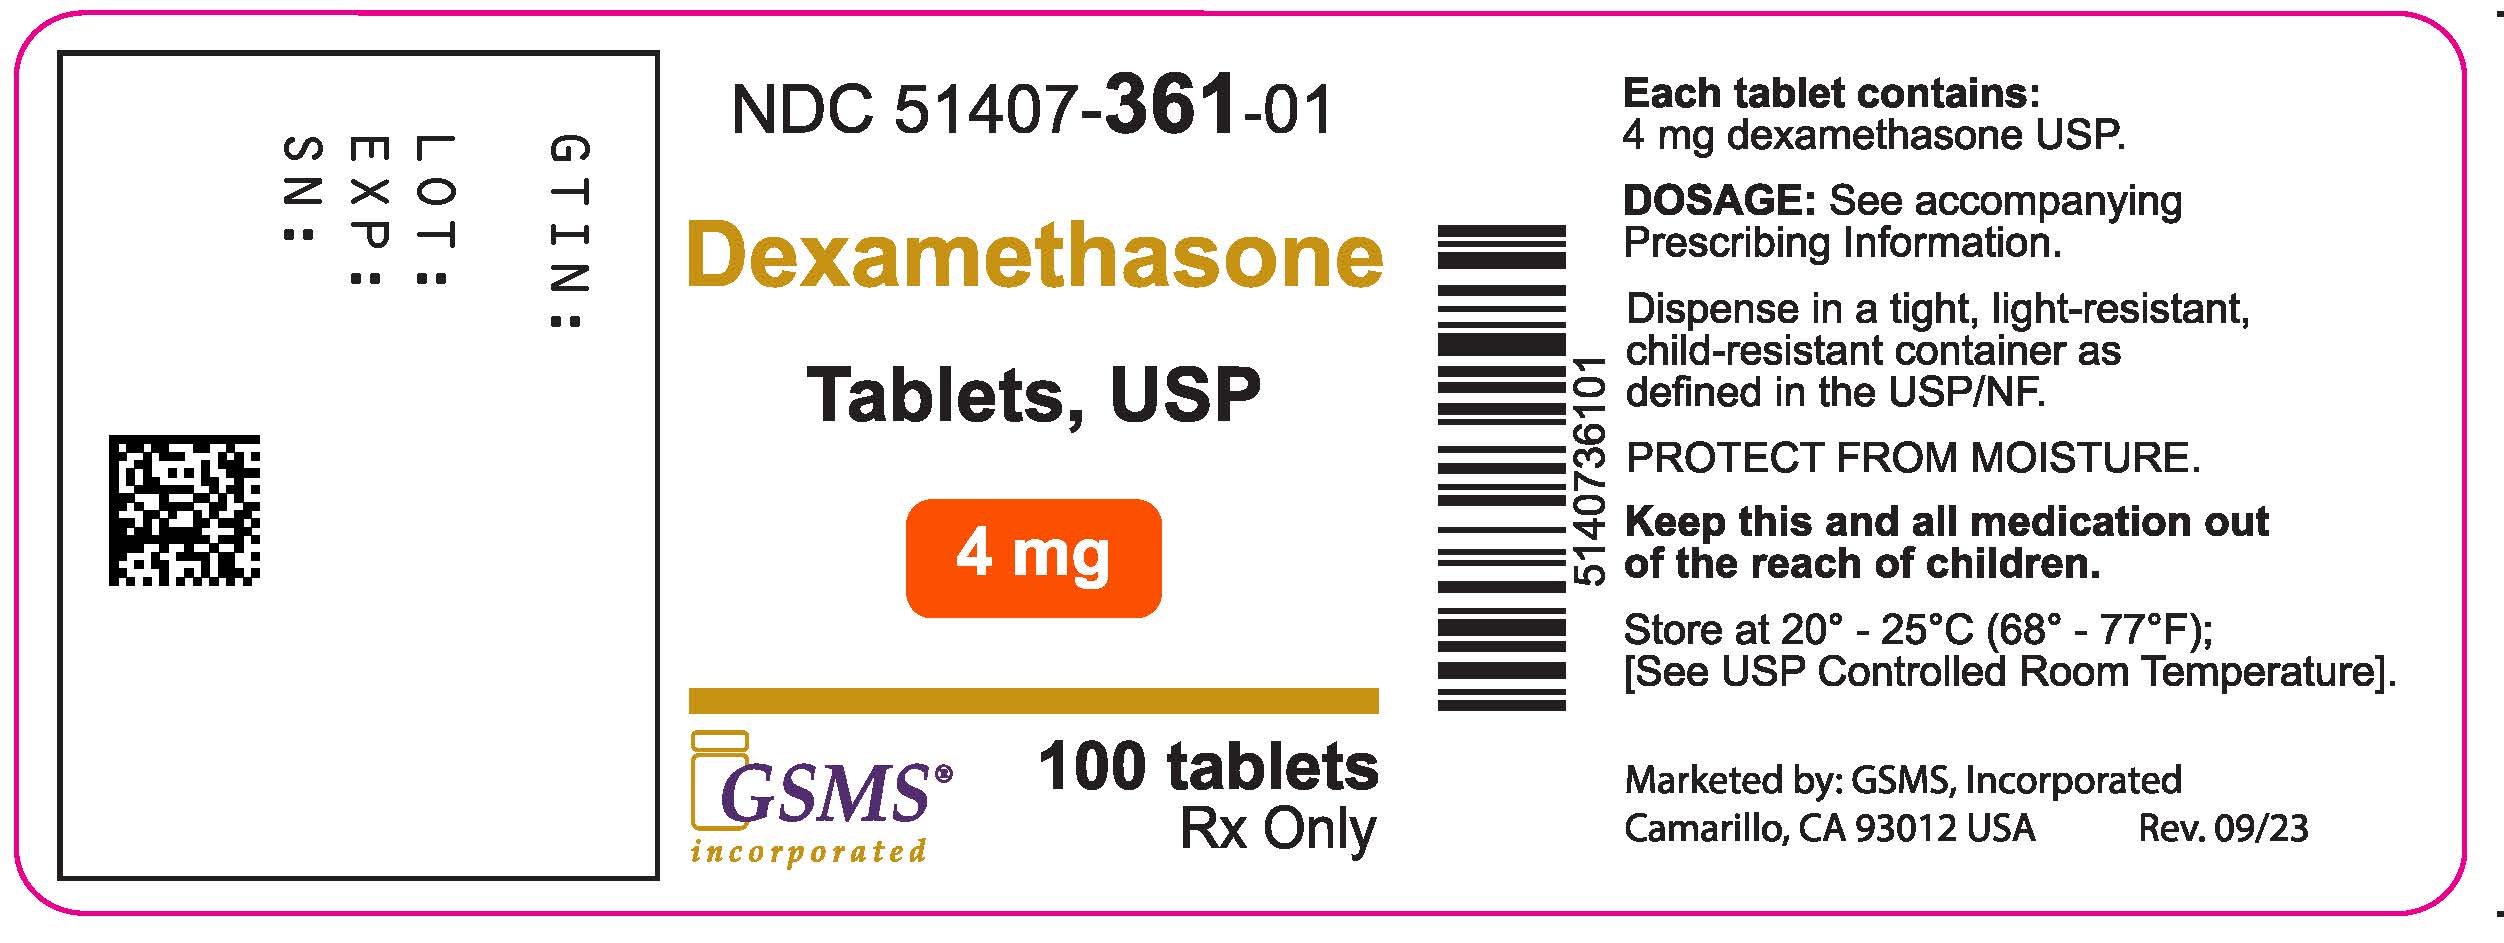 51407-361-01LB - Dexamethasone Tablets - Rev. 0923.jpg